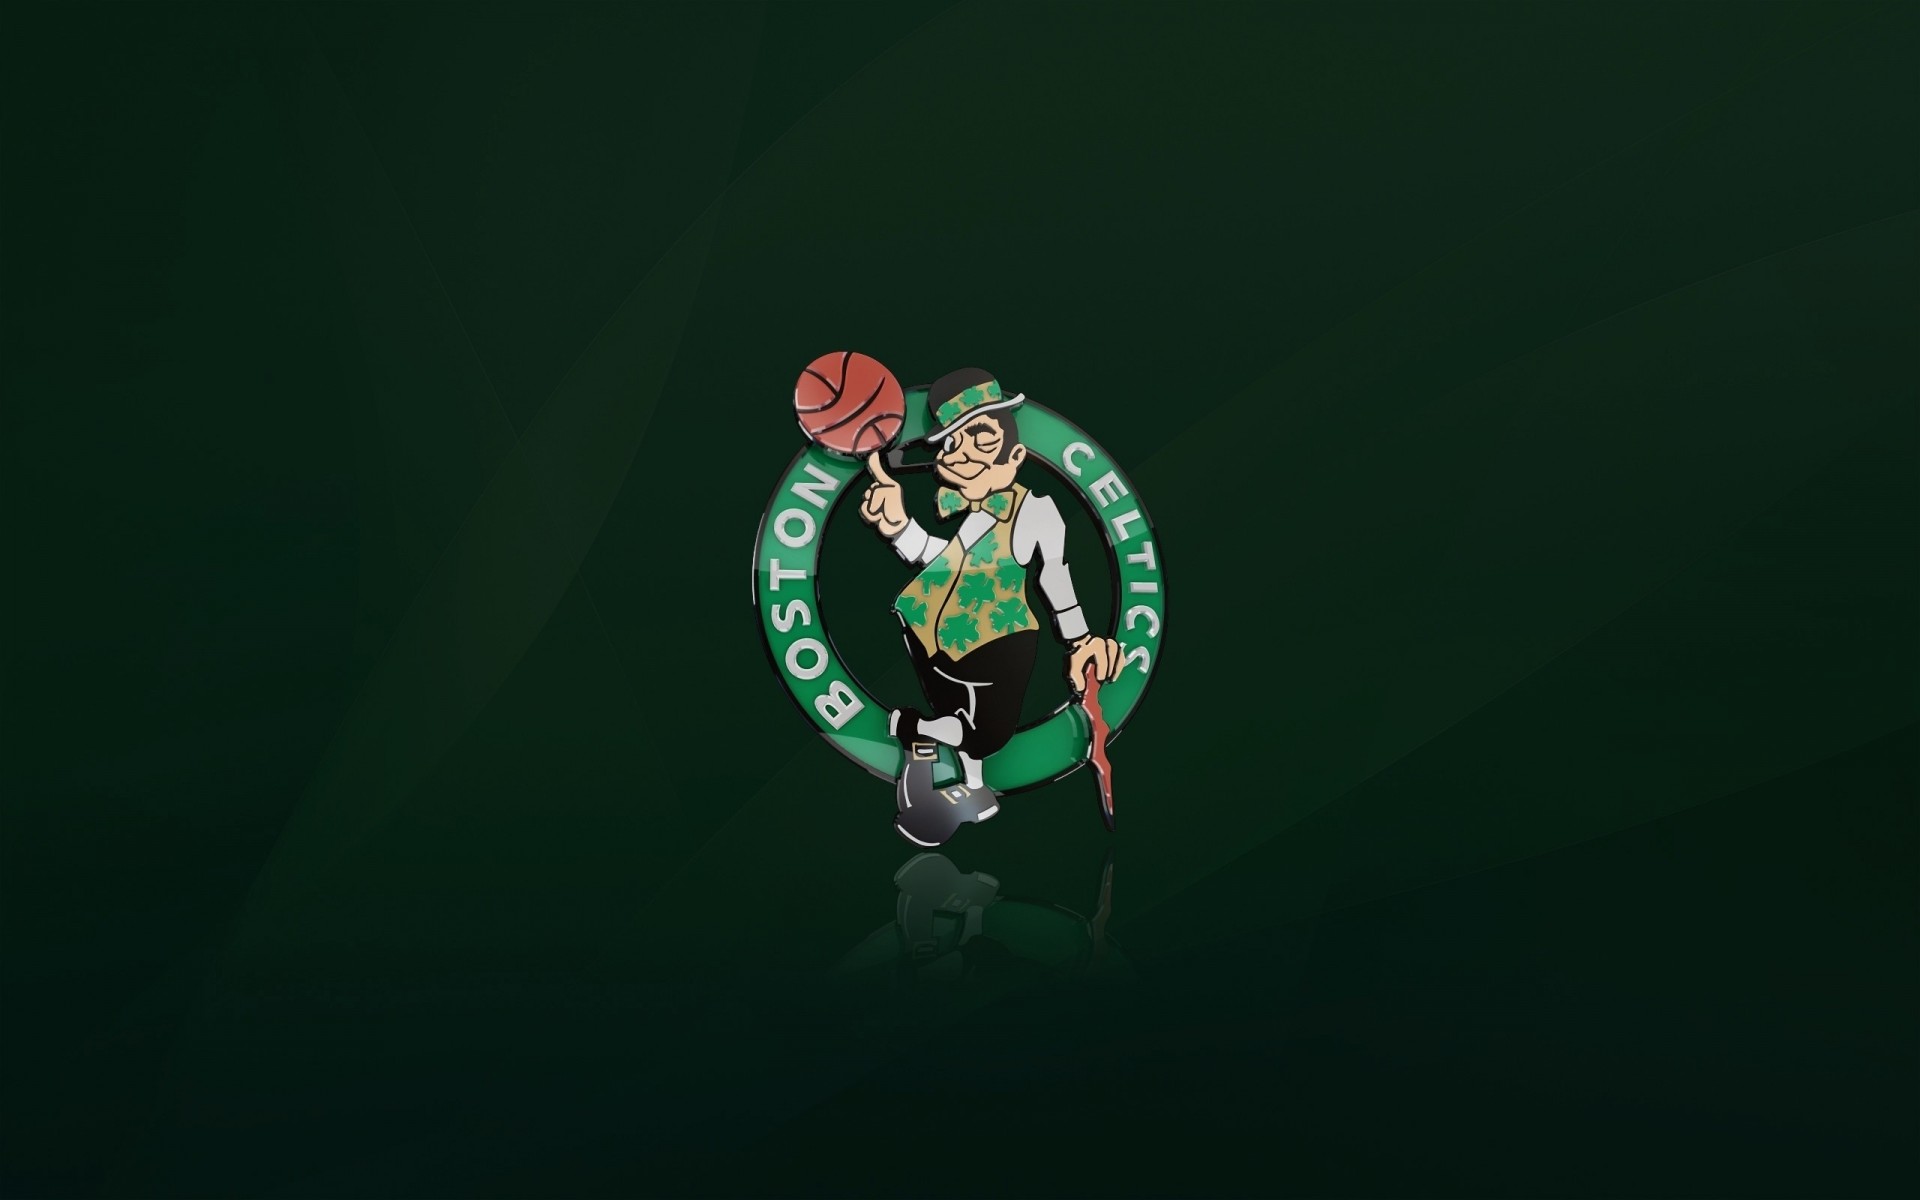 эмблема фон бостон баскетбол нба бостон селтикс зелень